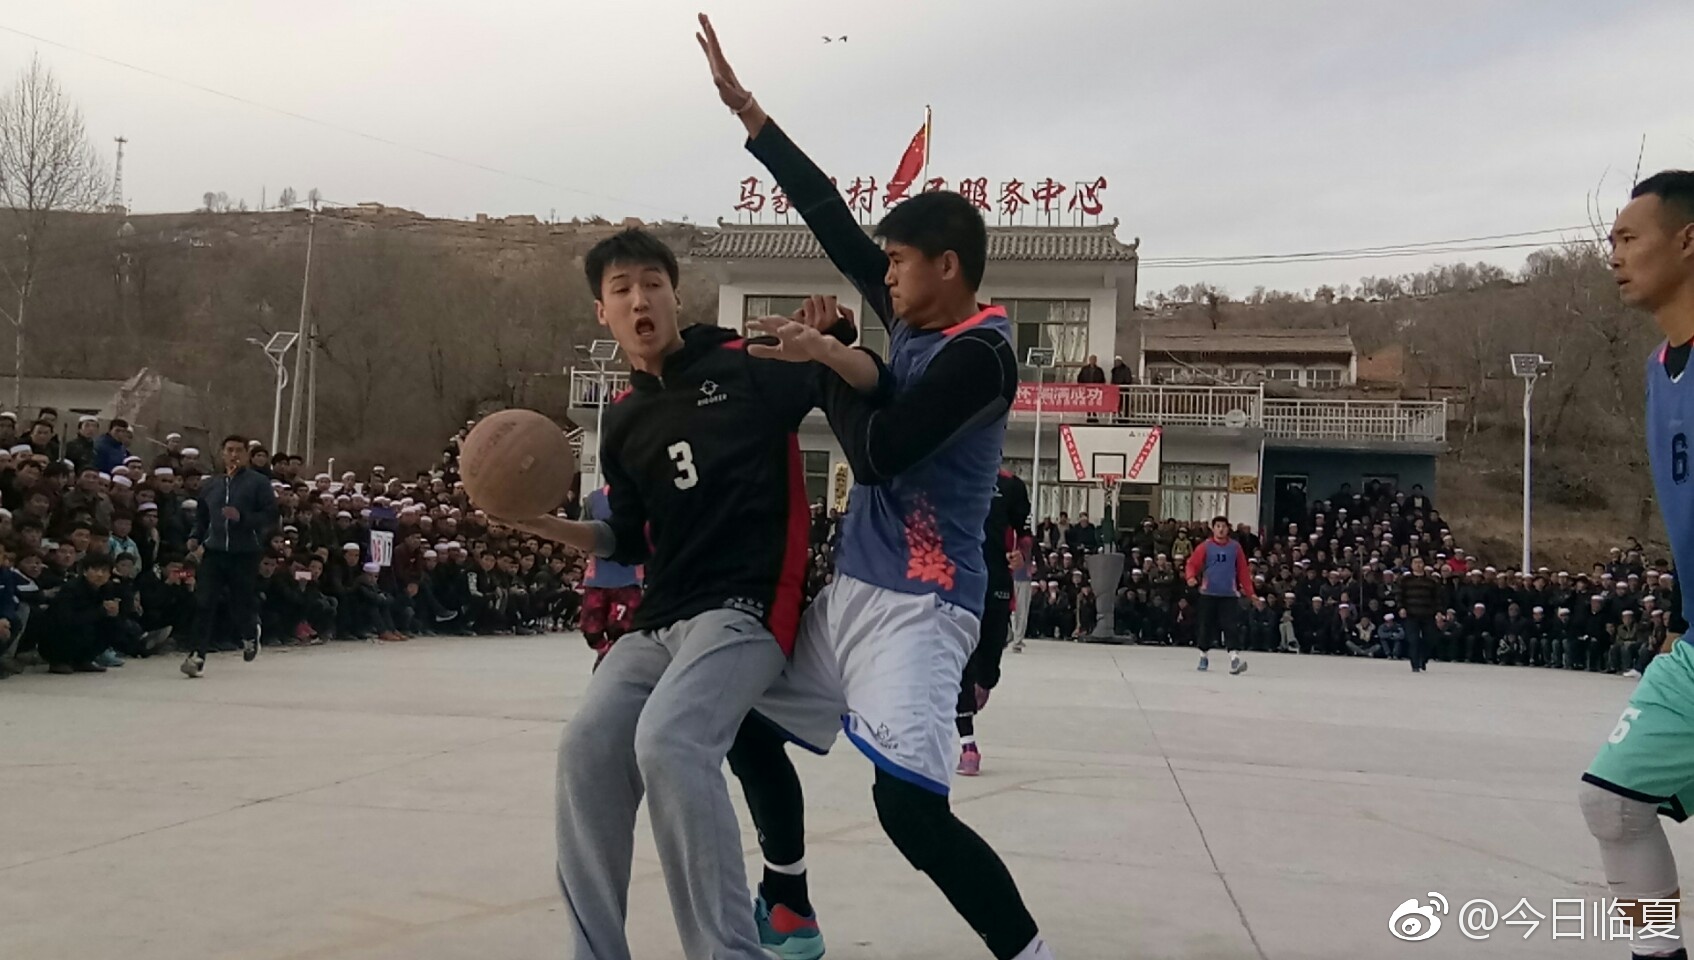 春节临近,在临夏州积石山下马家咀乡文化广场举行一条龙杯篮球运动